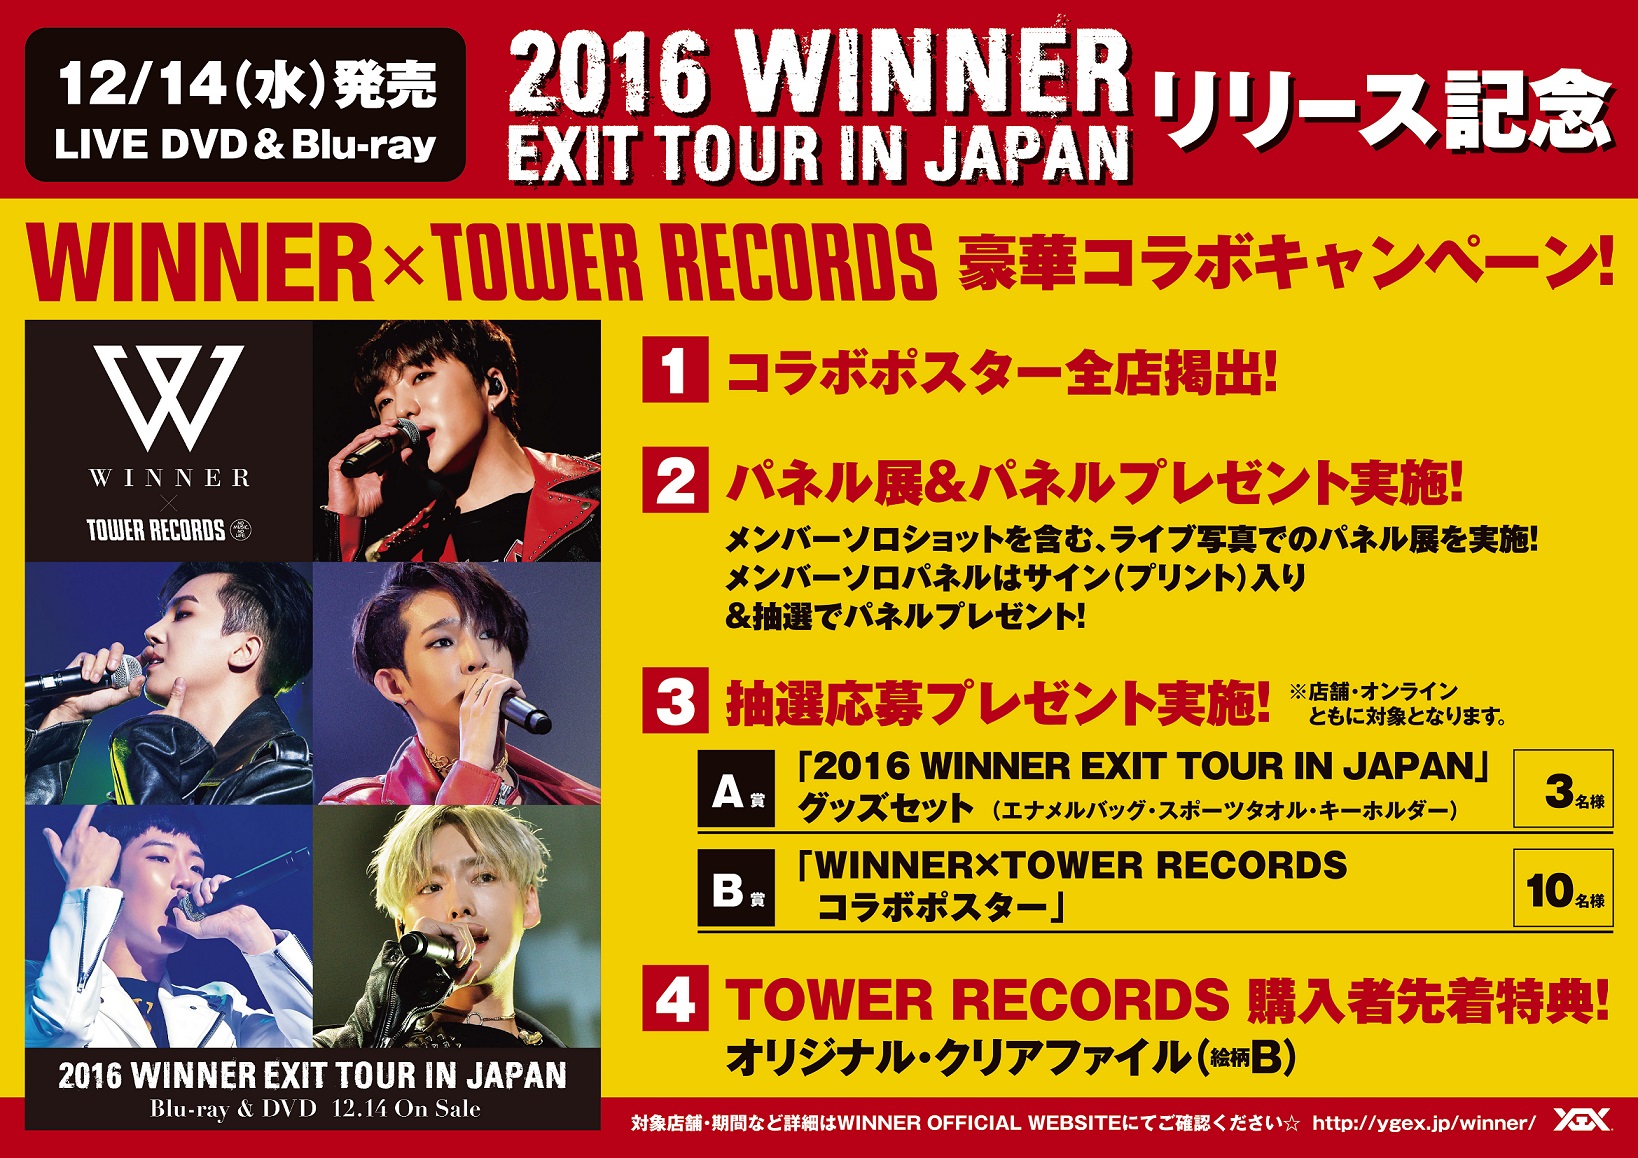 12/14(水)発売 LIVE DVD＆Blu-ray『2016 WINNER EXIT TOUR IN JAPAN』リリース記念  豪華コラボキャンペーン！ - TOWER RECORDS ONLINE